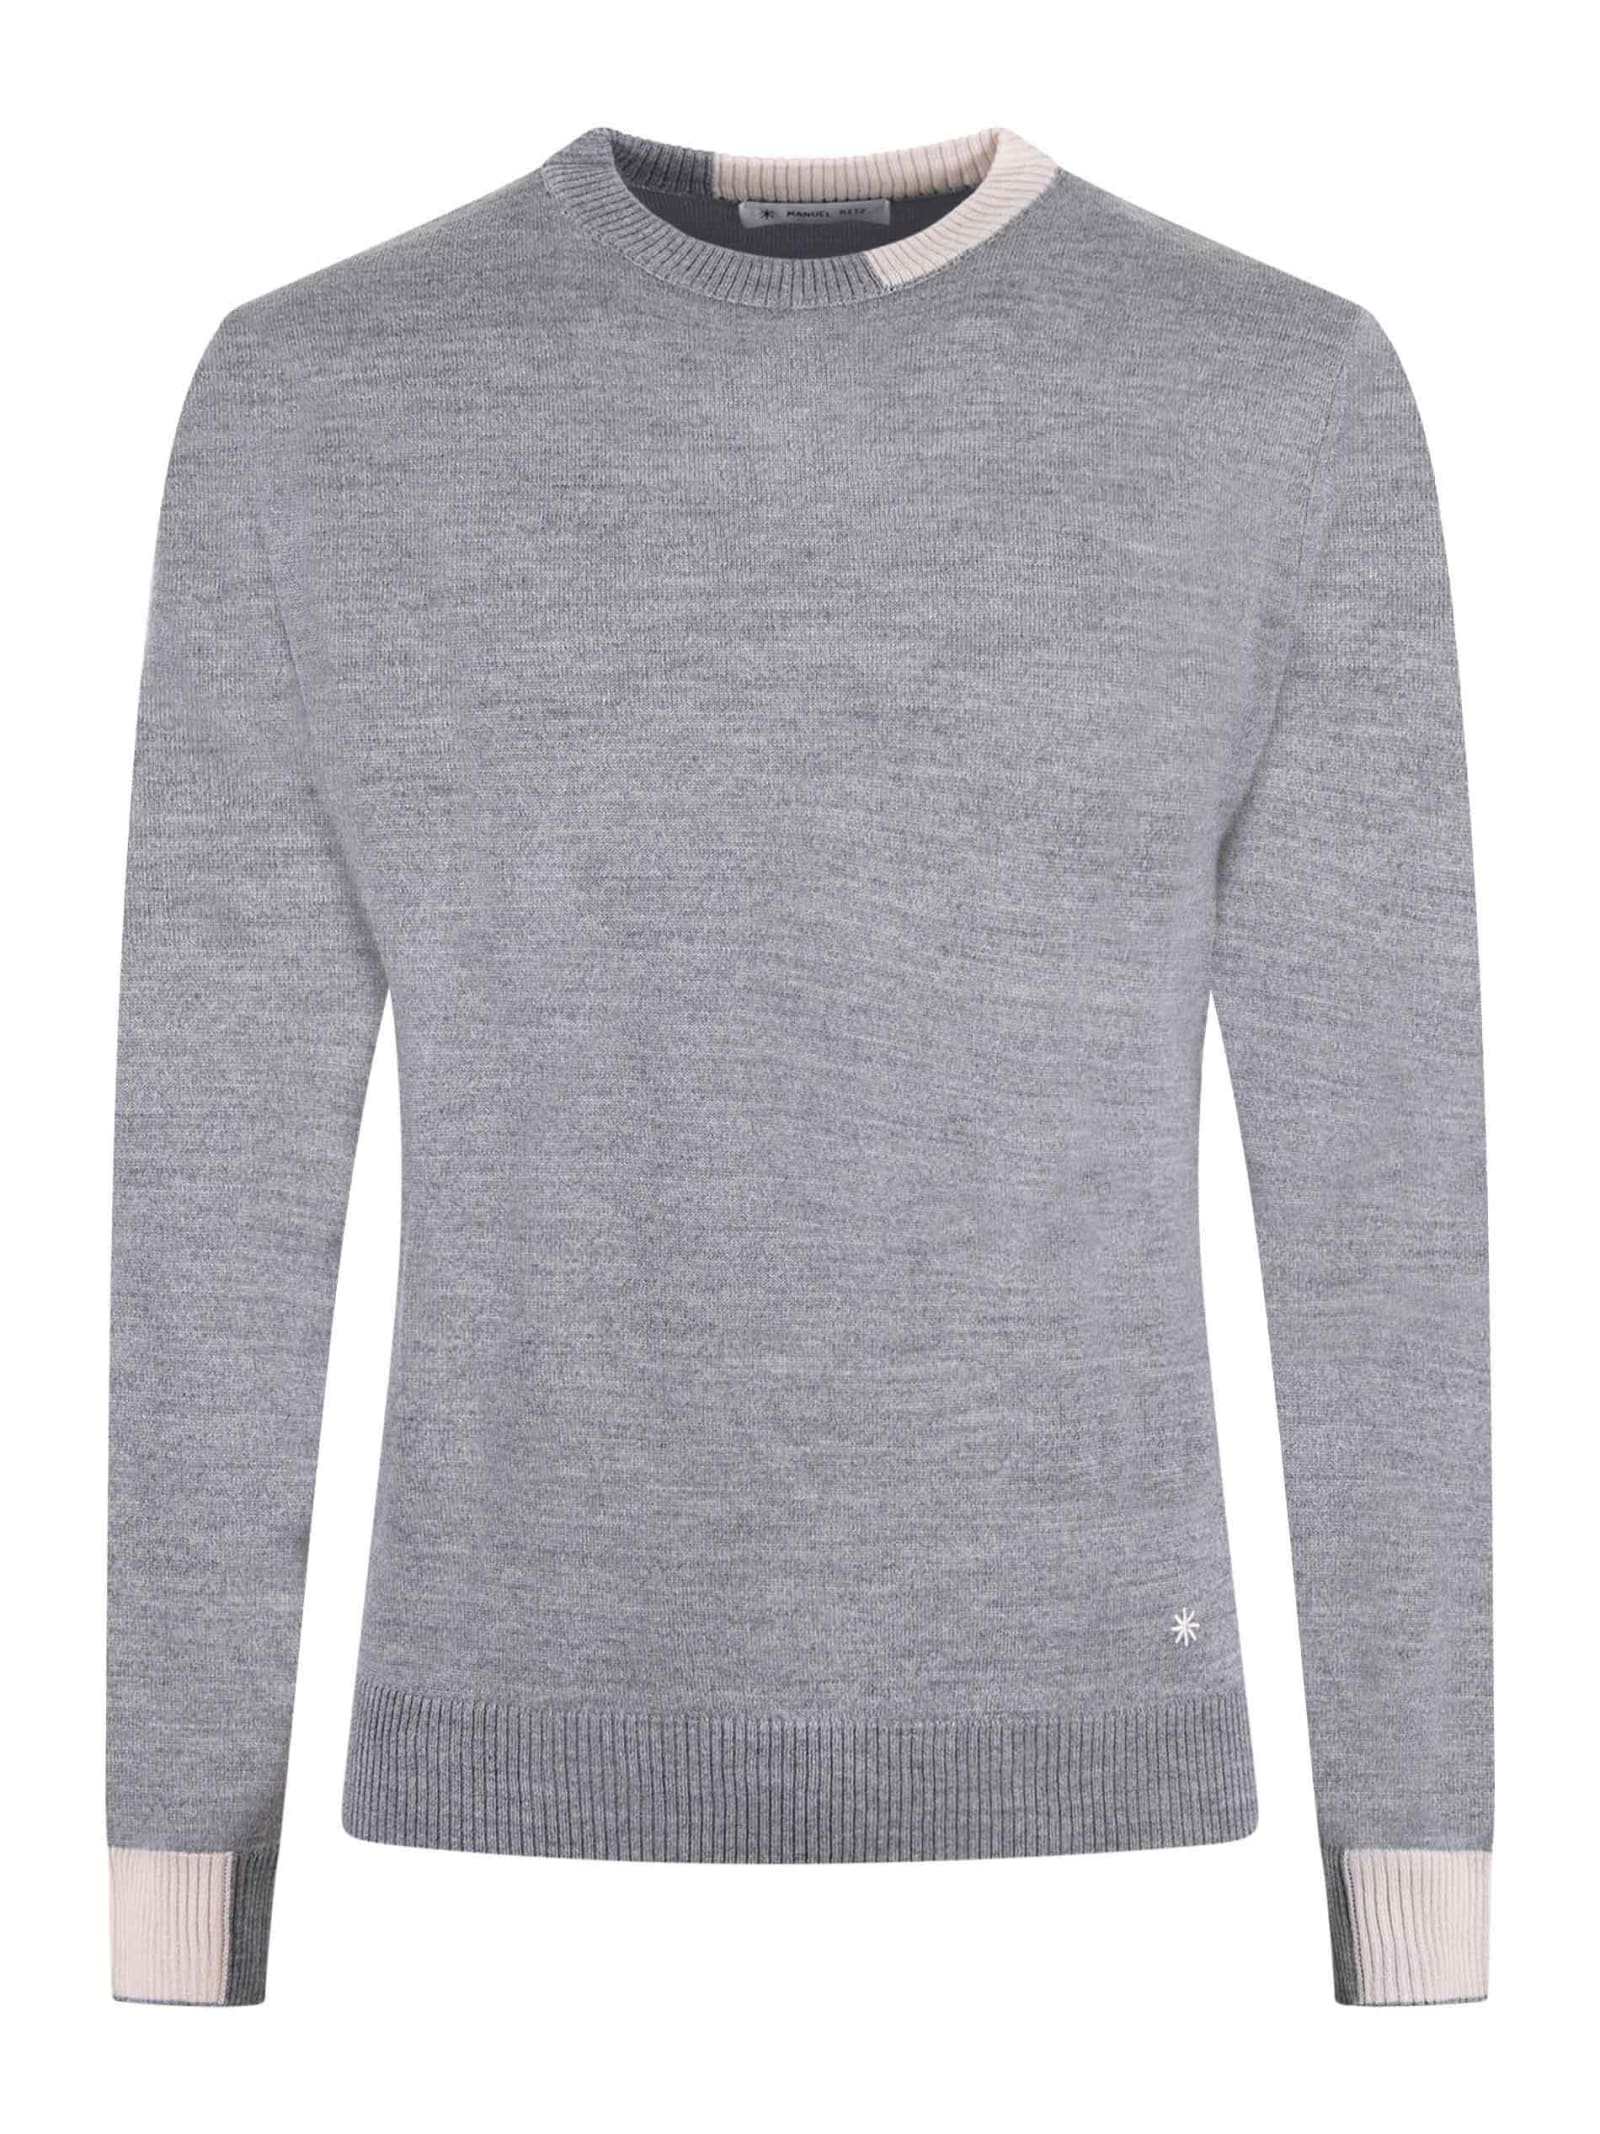 Manuel Ritz Sweater In Grey